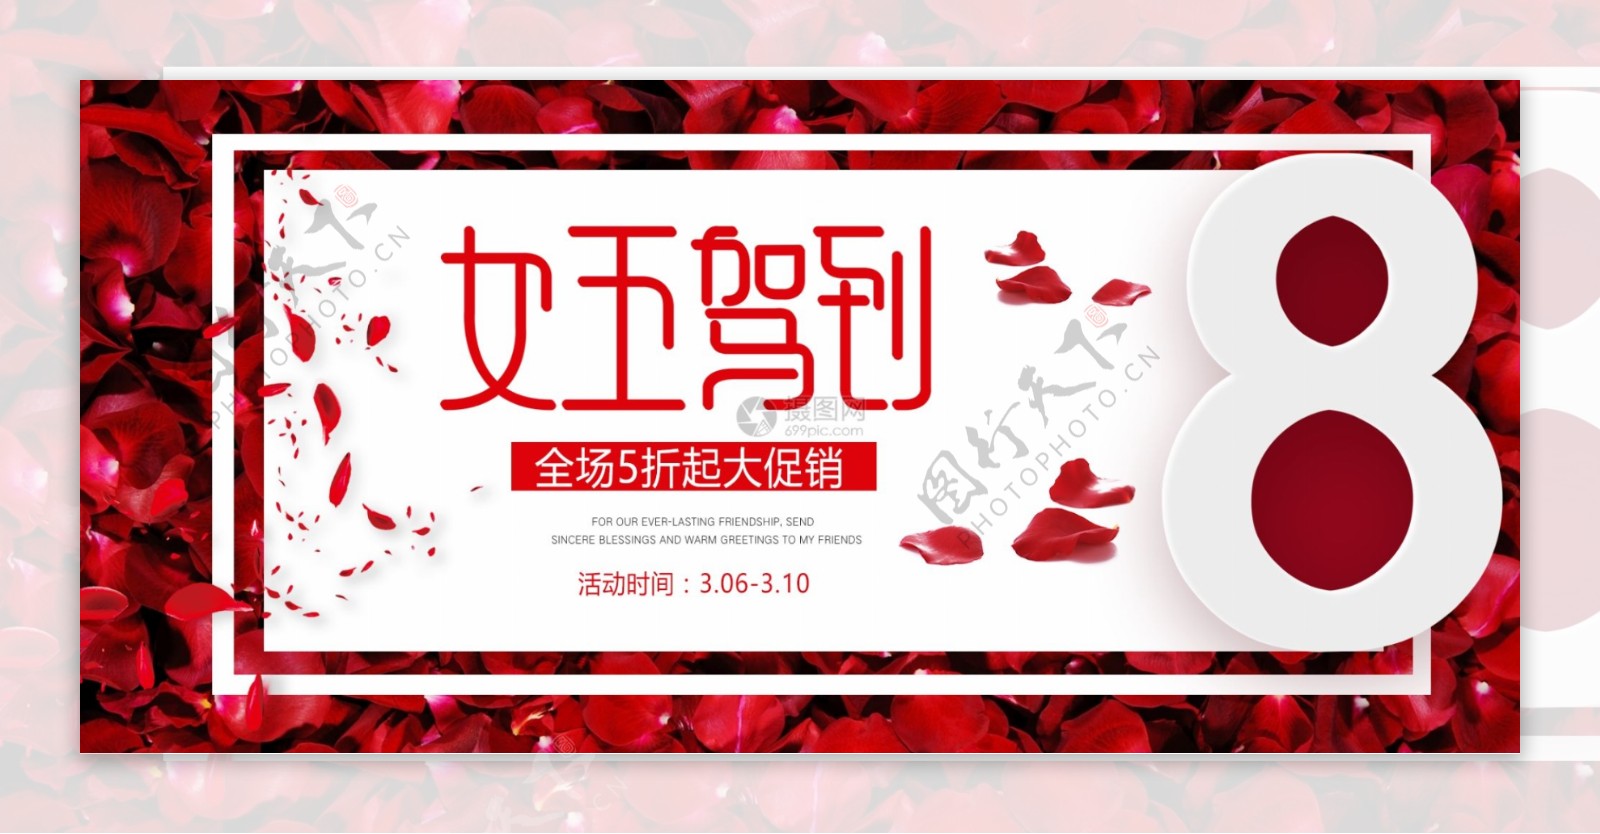 38女神节促销banner